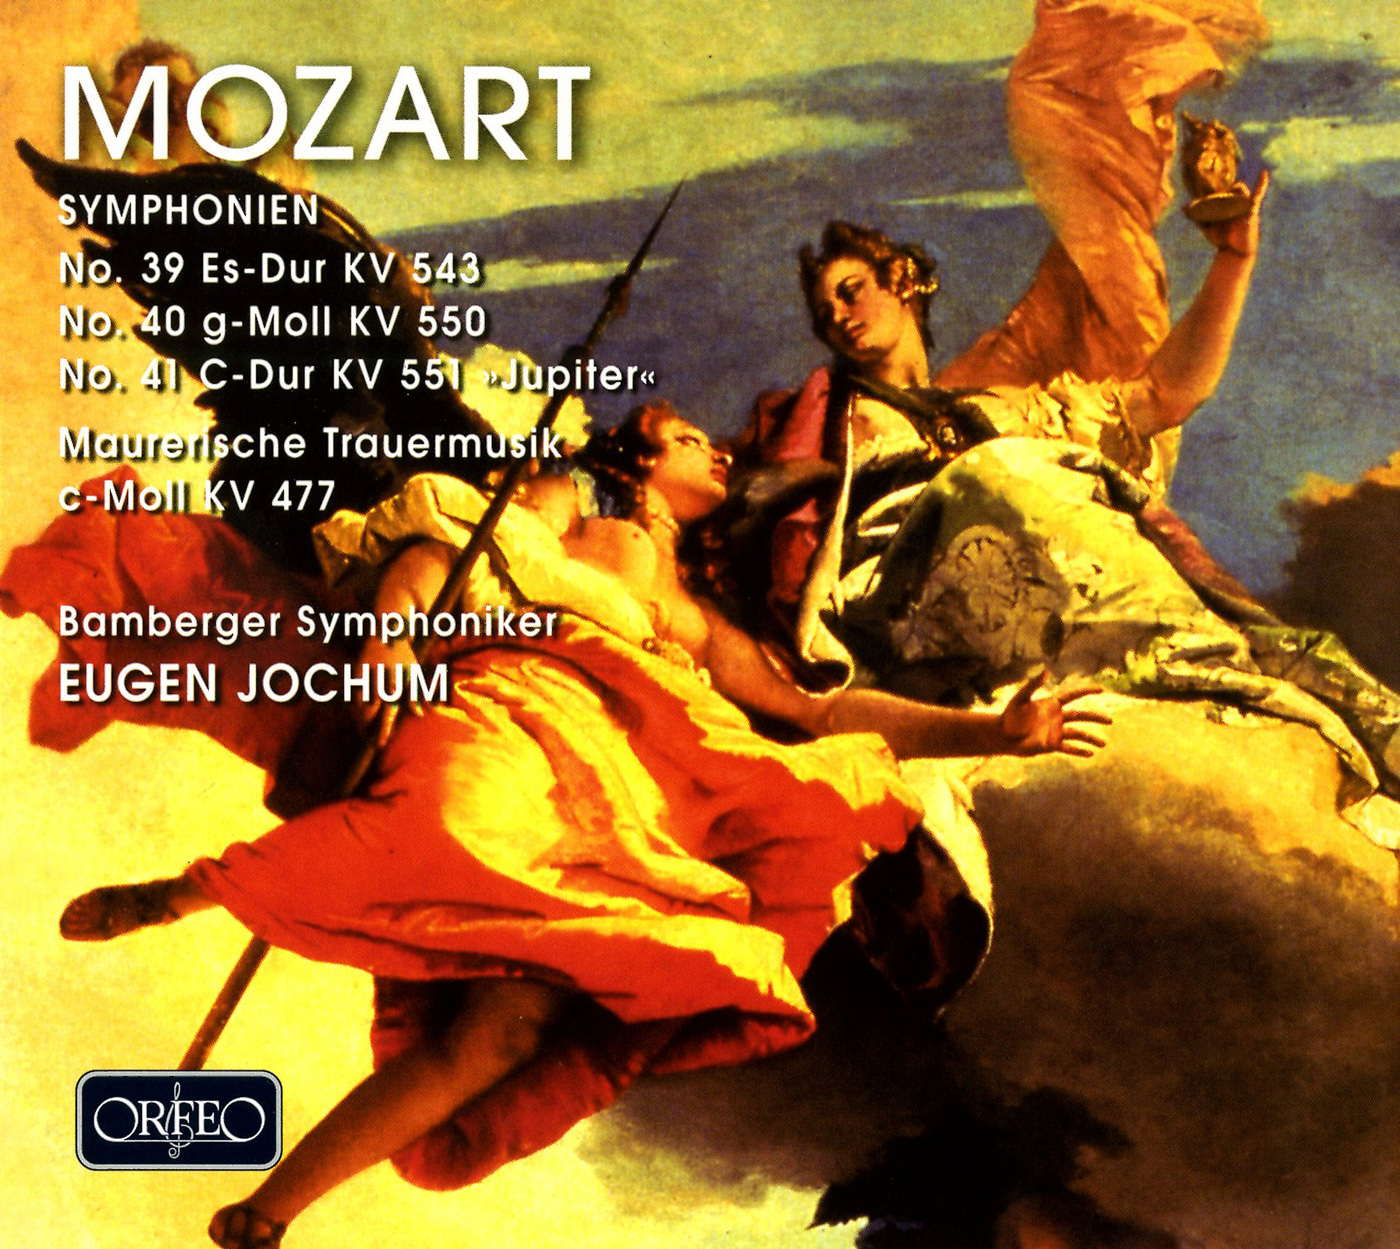 MOZART, W.A.: Symphonies Nos. 39, 40 and 41, "Jupiter" / Maurerische Trauermusik (Bamberg Symphony, Jochum)